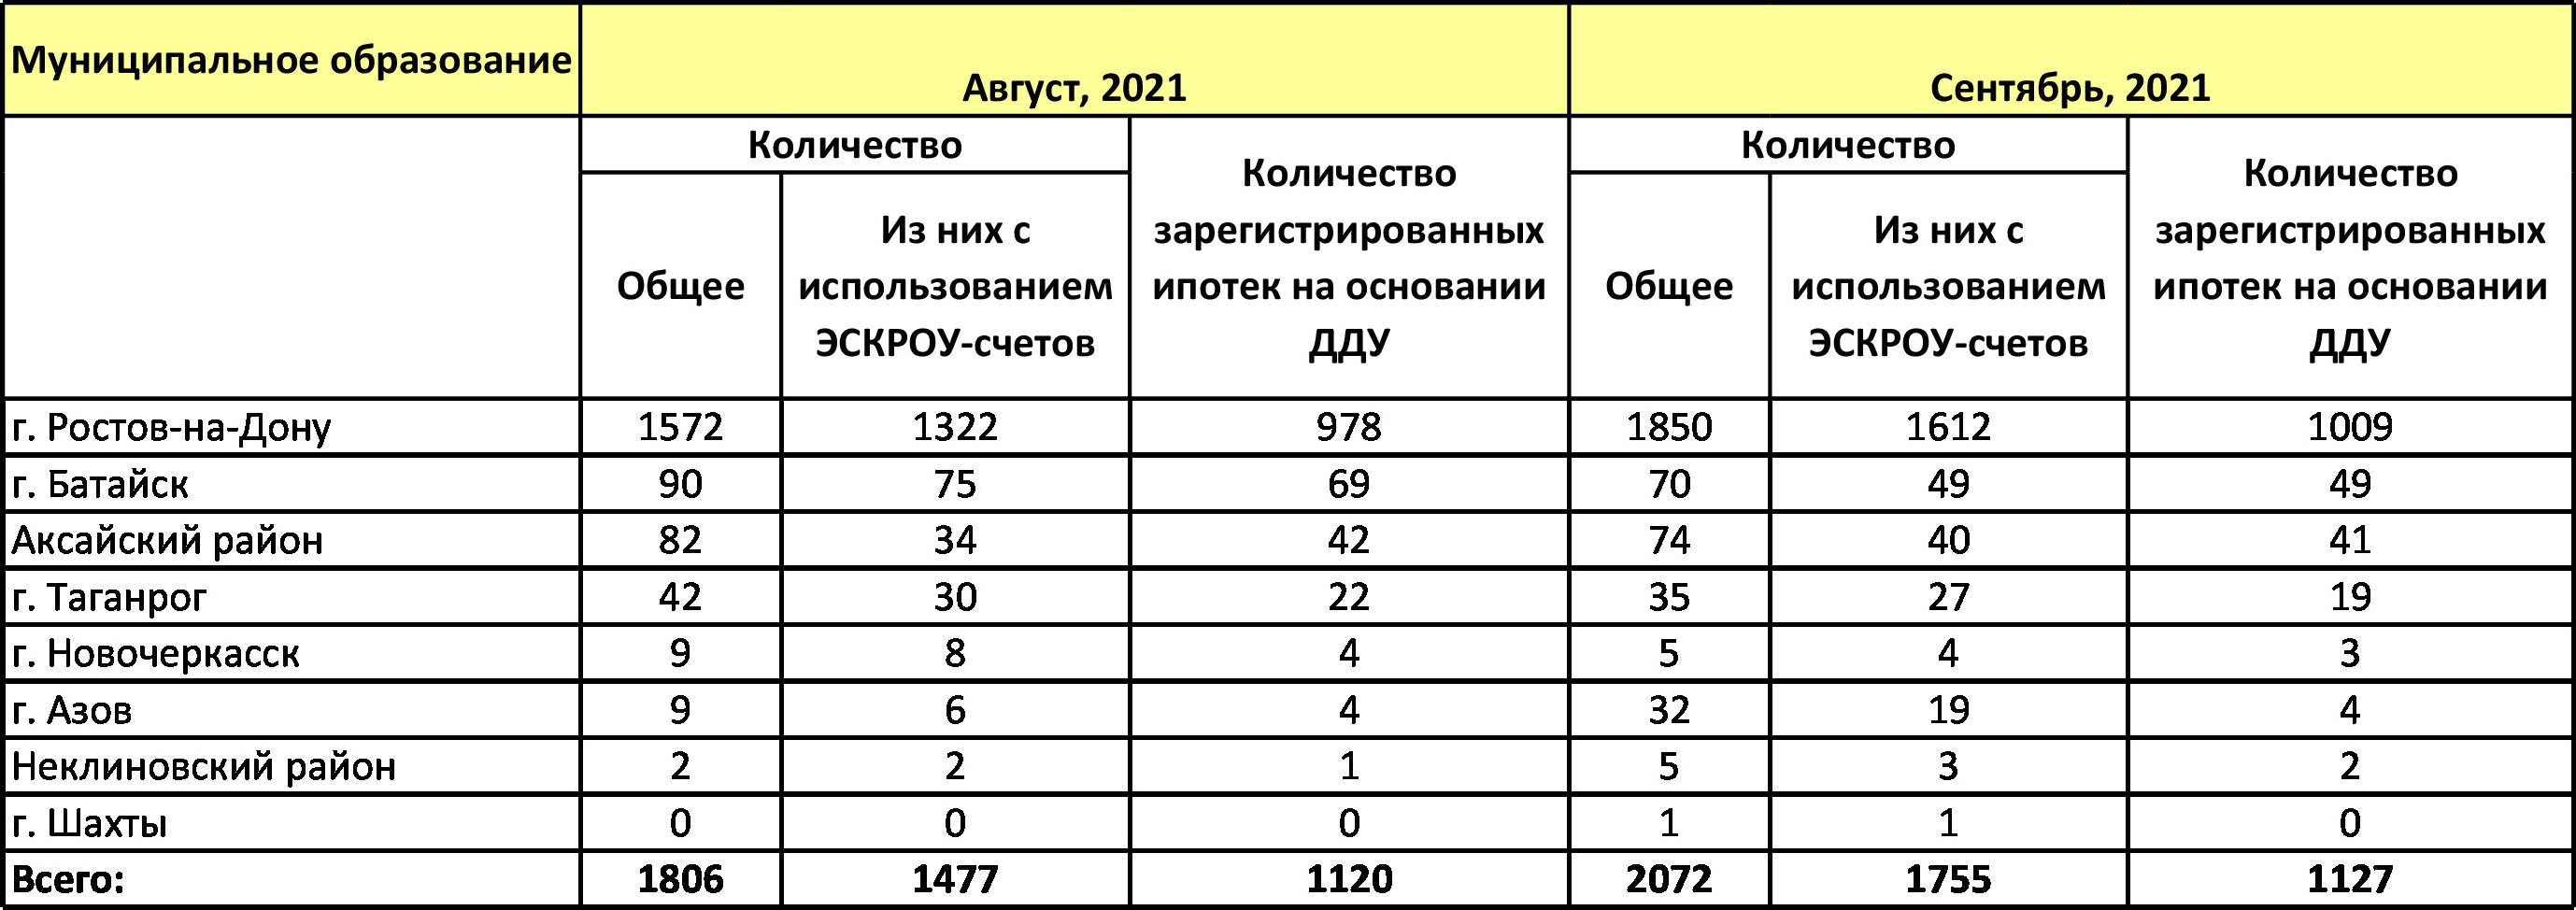 В Ростовской области в сентябре число ДДУ вновь пошло в рост